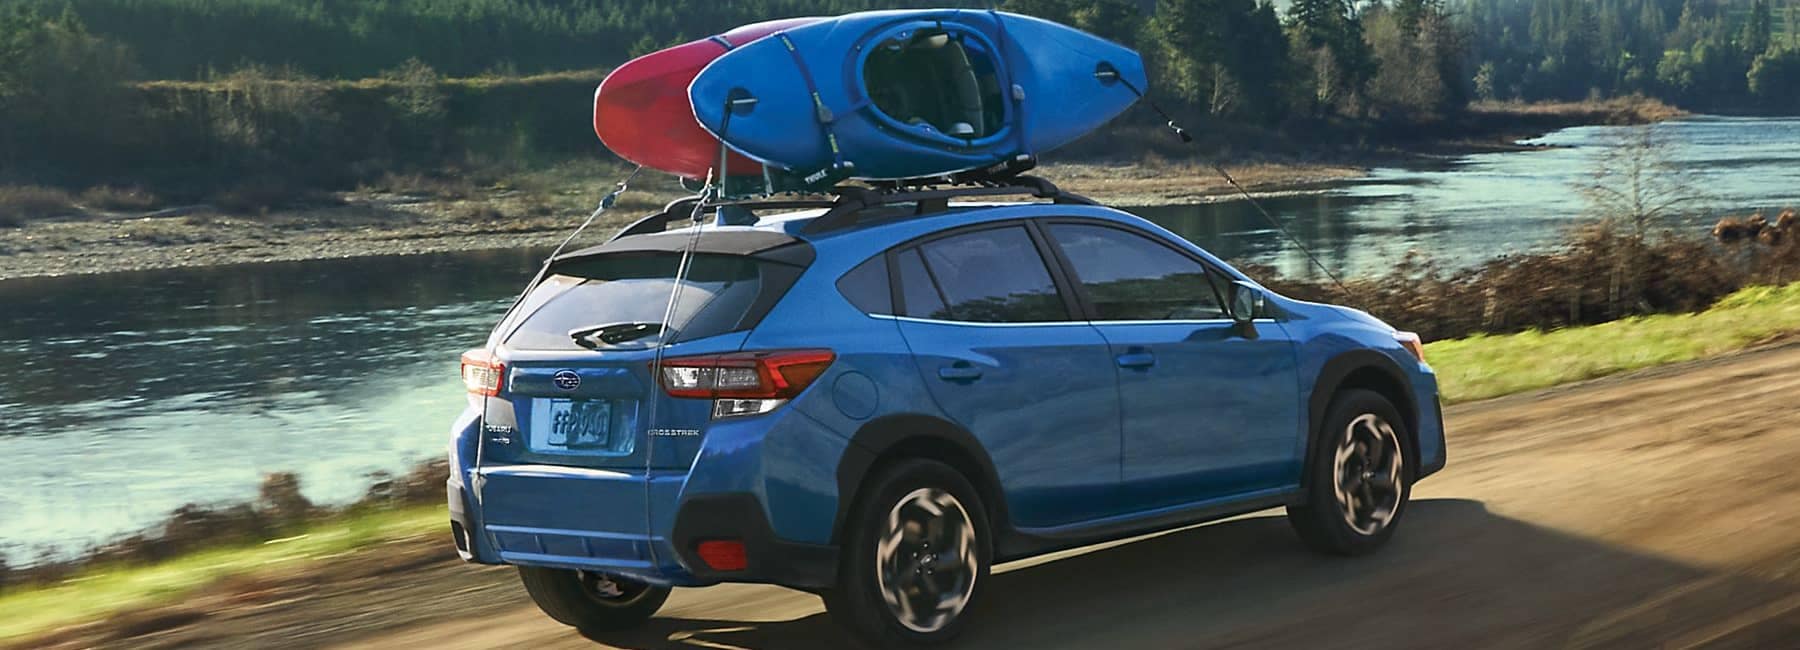 Crosstrek shown in Horizon Blue Pearl with kayaks